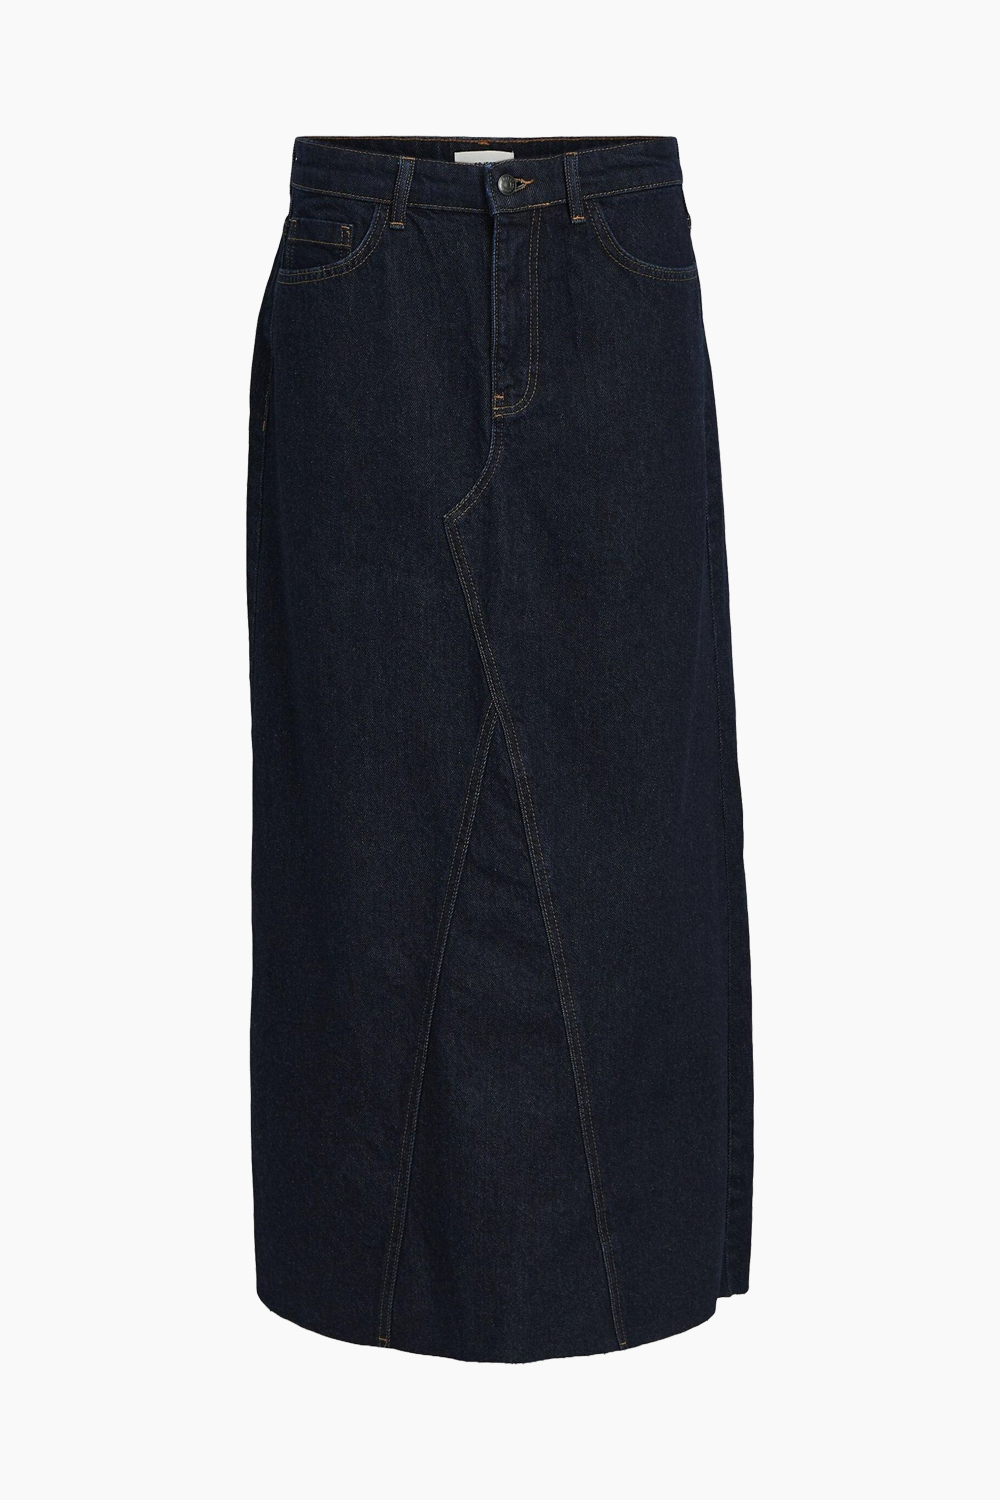 6: ObjHarlow Long Denim Skirt - Dark Blue Denim - Object - Blå M